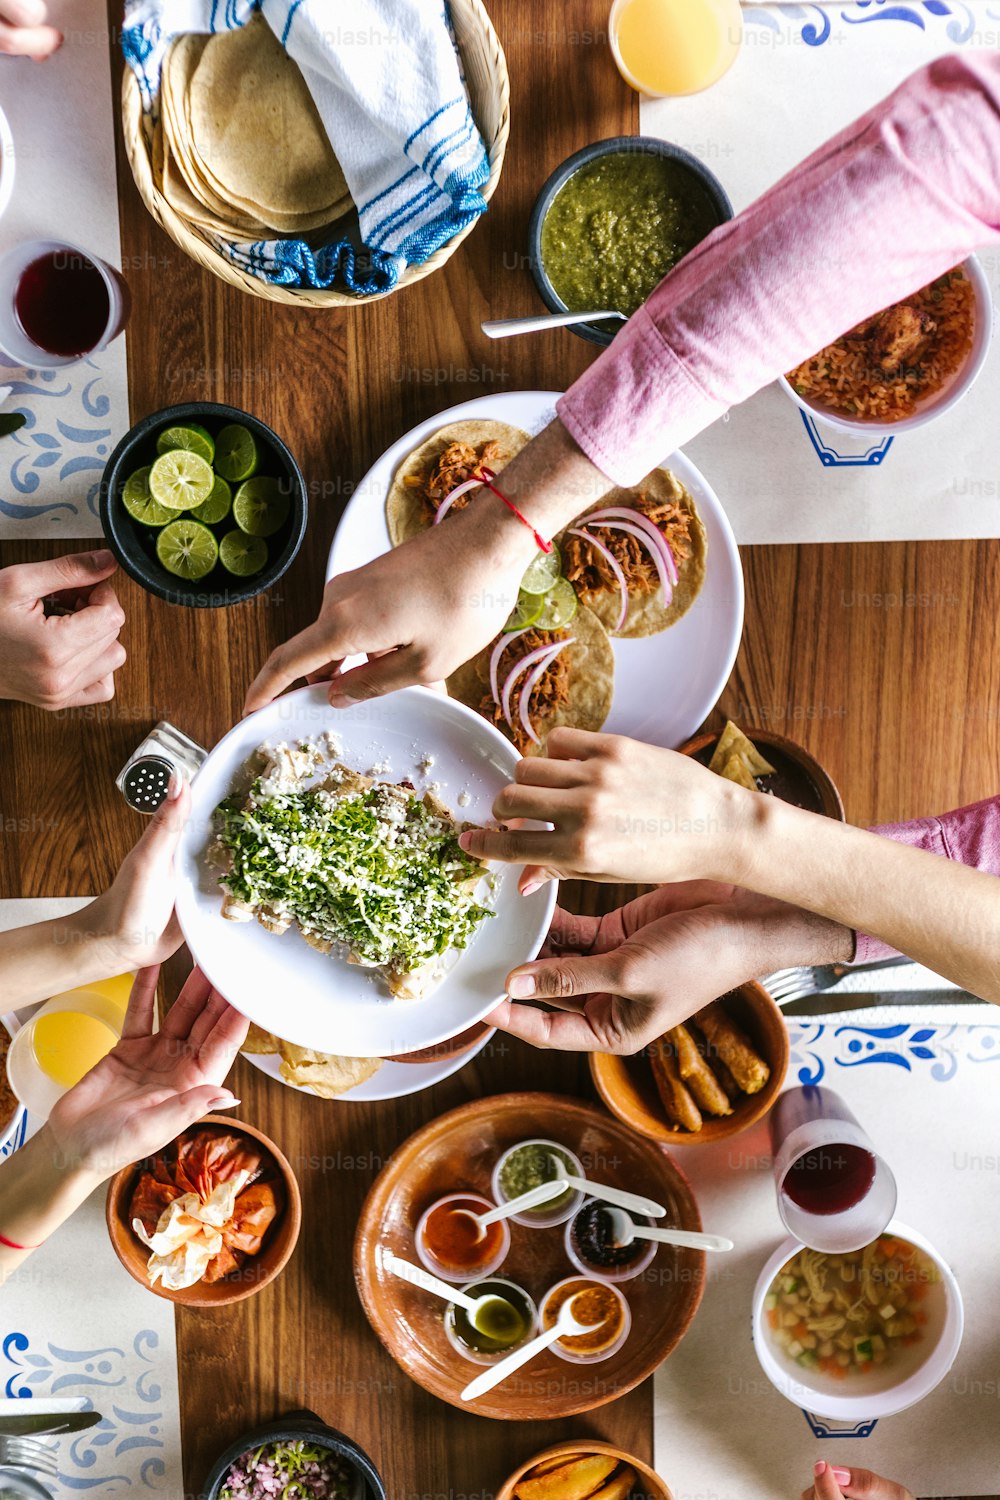 멕시코 타코와 전통 음식, 간식 및 사람들이 테이블 위에 손을 대는 라틴어 친구들, 평면도. 멕시코 요리 라틴 아메리카